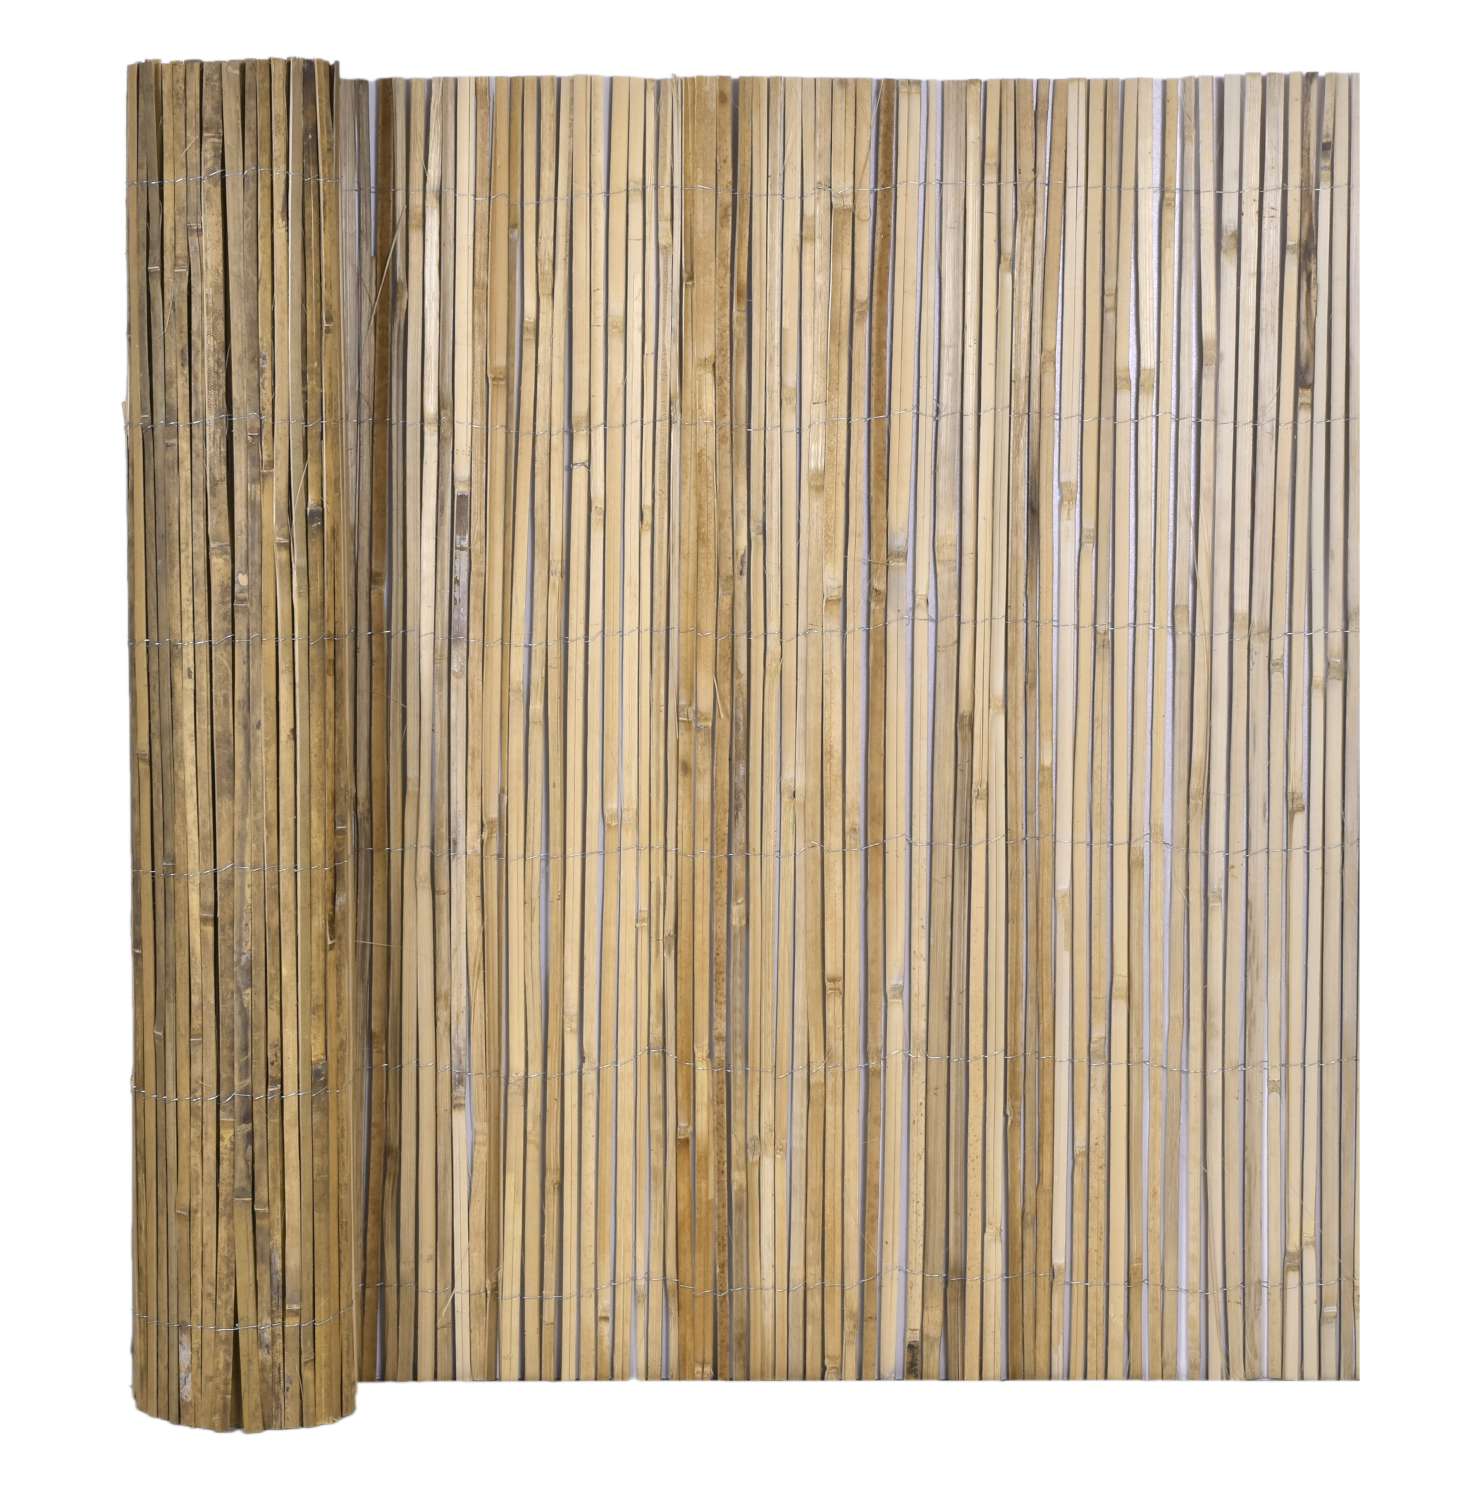 Mata osłonowa bambusowa 1,2x5 m na ogrodzenie